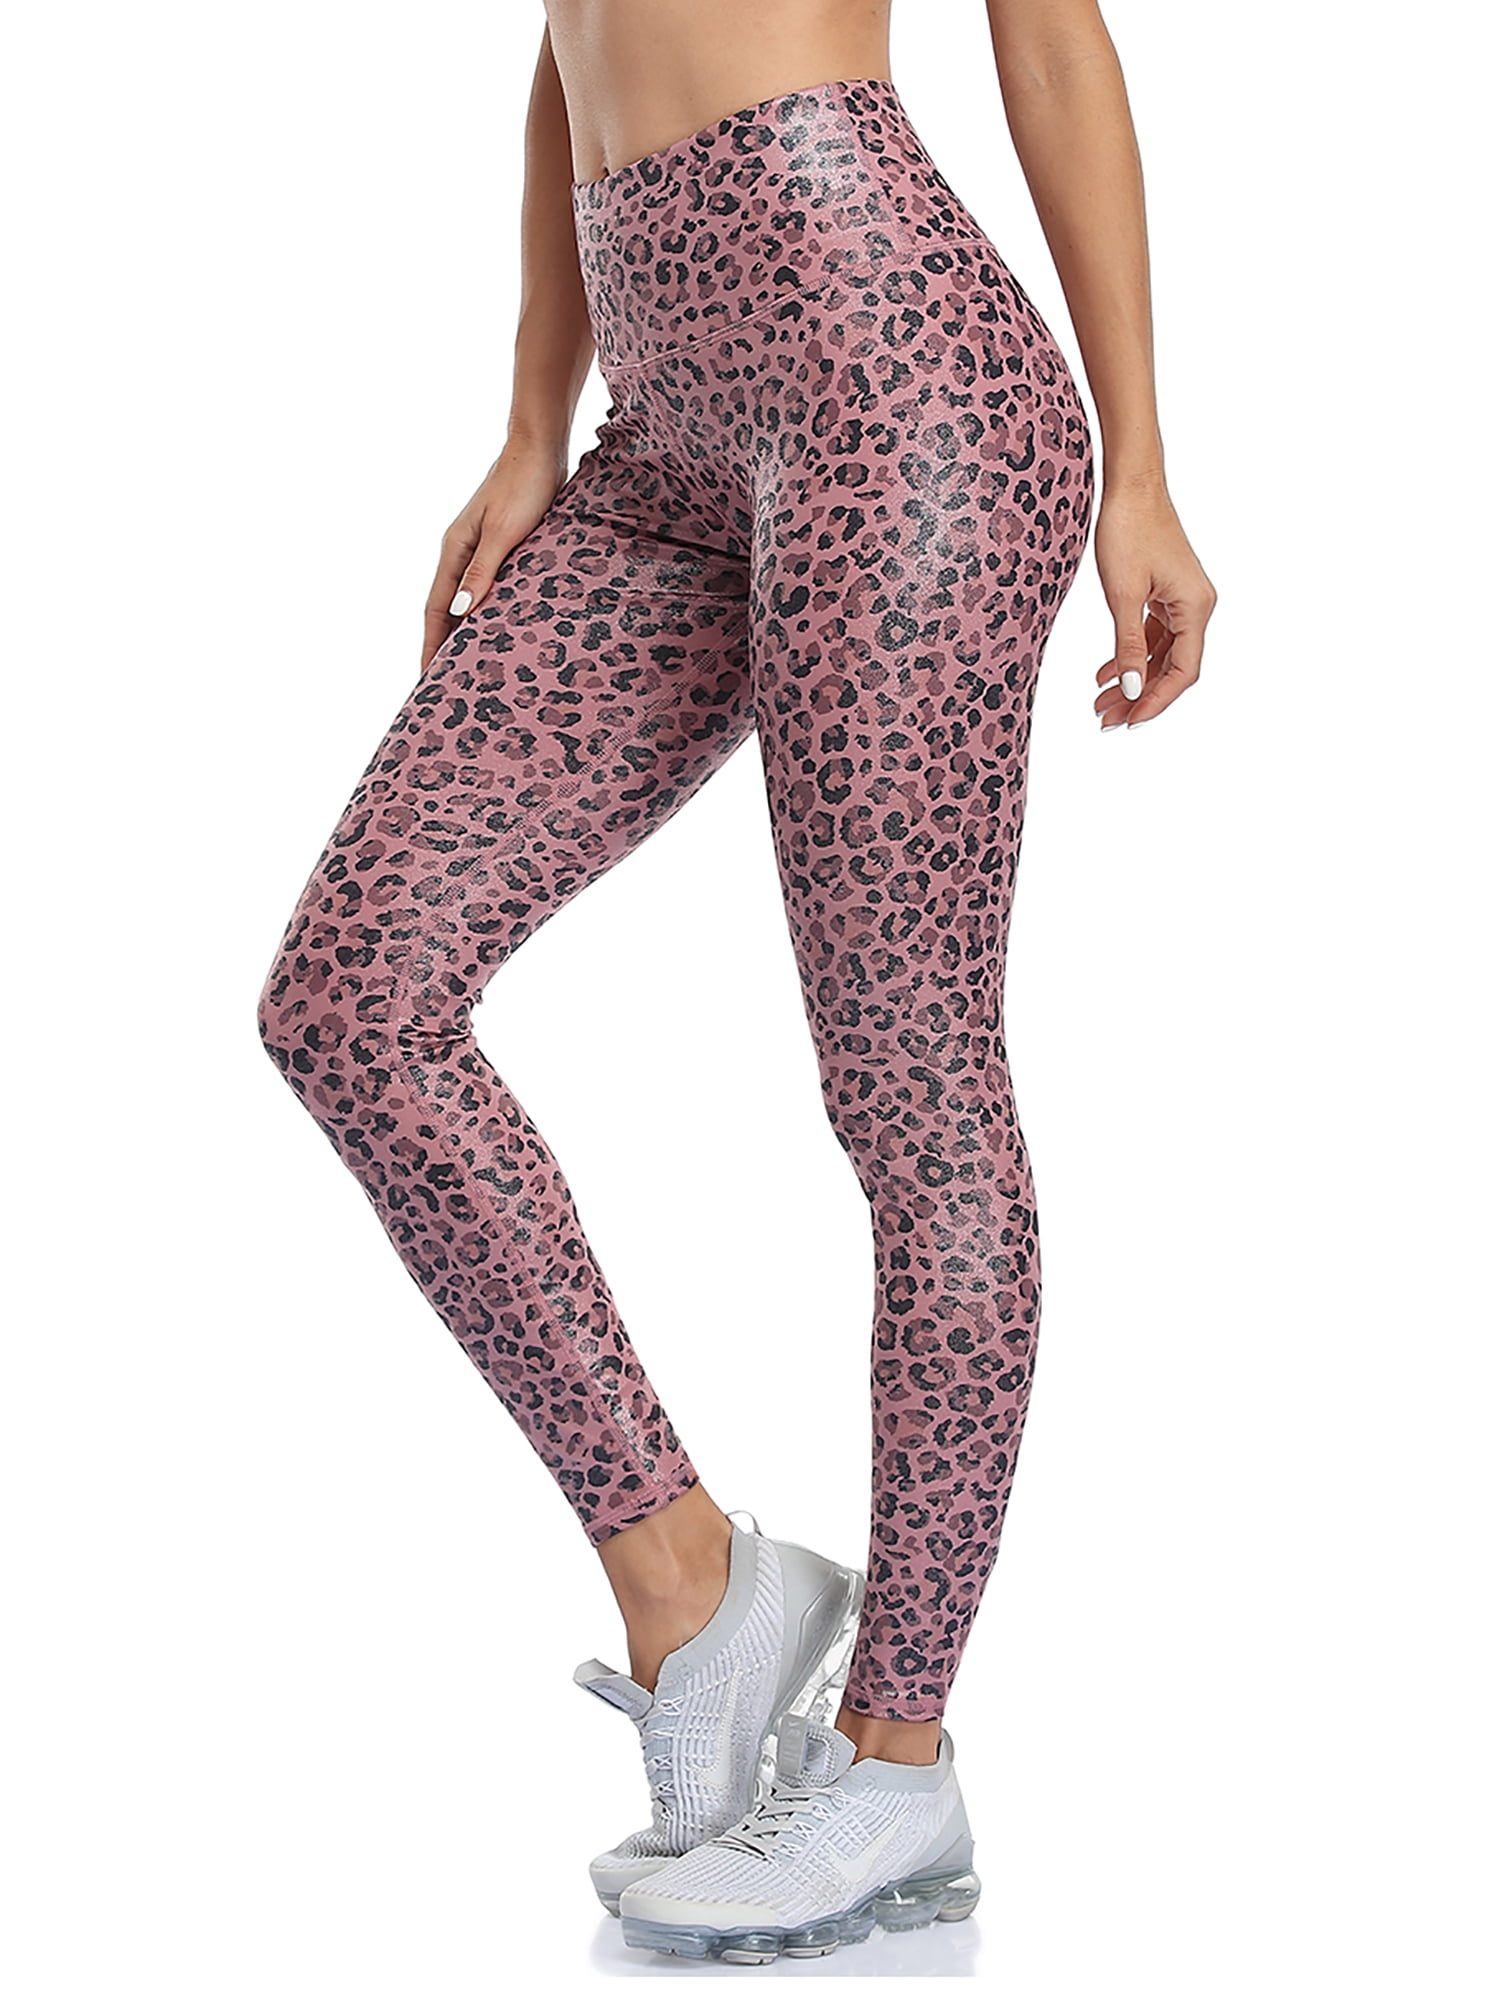 Women Thick Warm Fleece Winter Leggings Mujer Leopard Plaid Floral Spliced  Patten Legging Lady Stretch Skinny Pants - Leggings - AliExpress